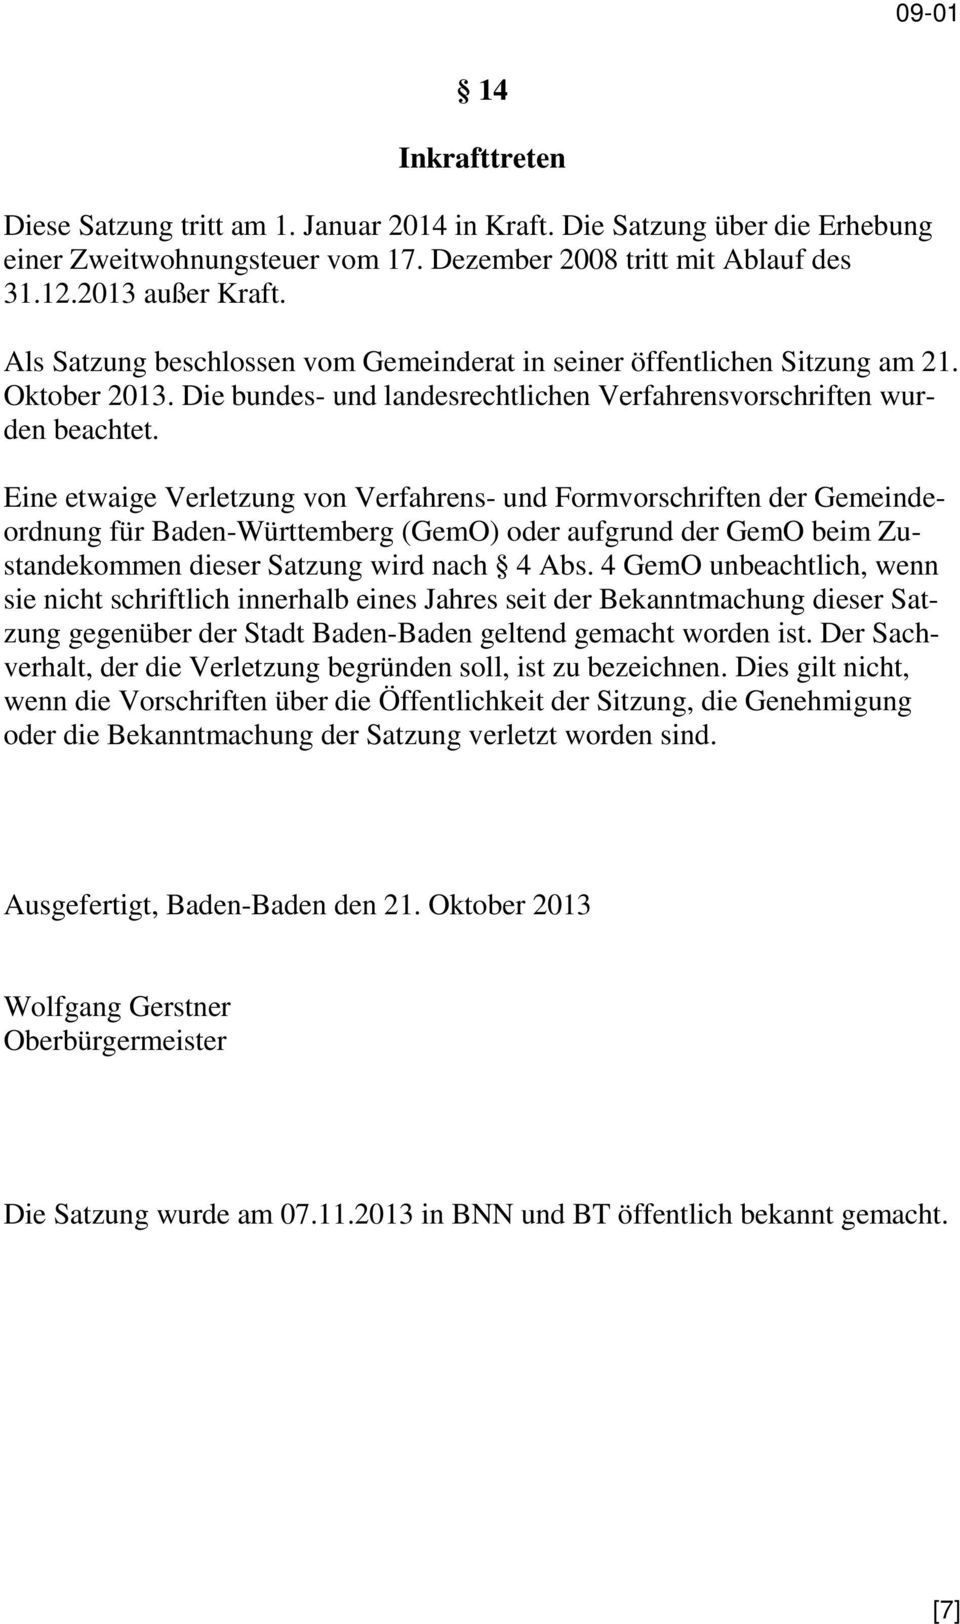 Eine etwaige Verletzung von Verfahrens- und Formvorschriften der Gemeindeordnung für Baden-Württemberg (GemO) oder aufgrund der GemO beim Zustandekommen dieser Satzung wird nach 4 Abs.